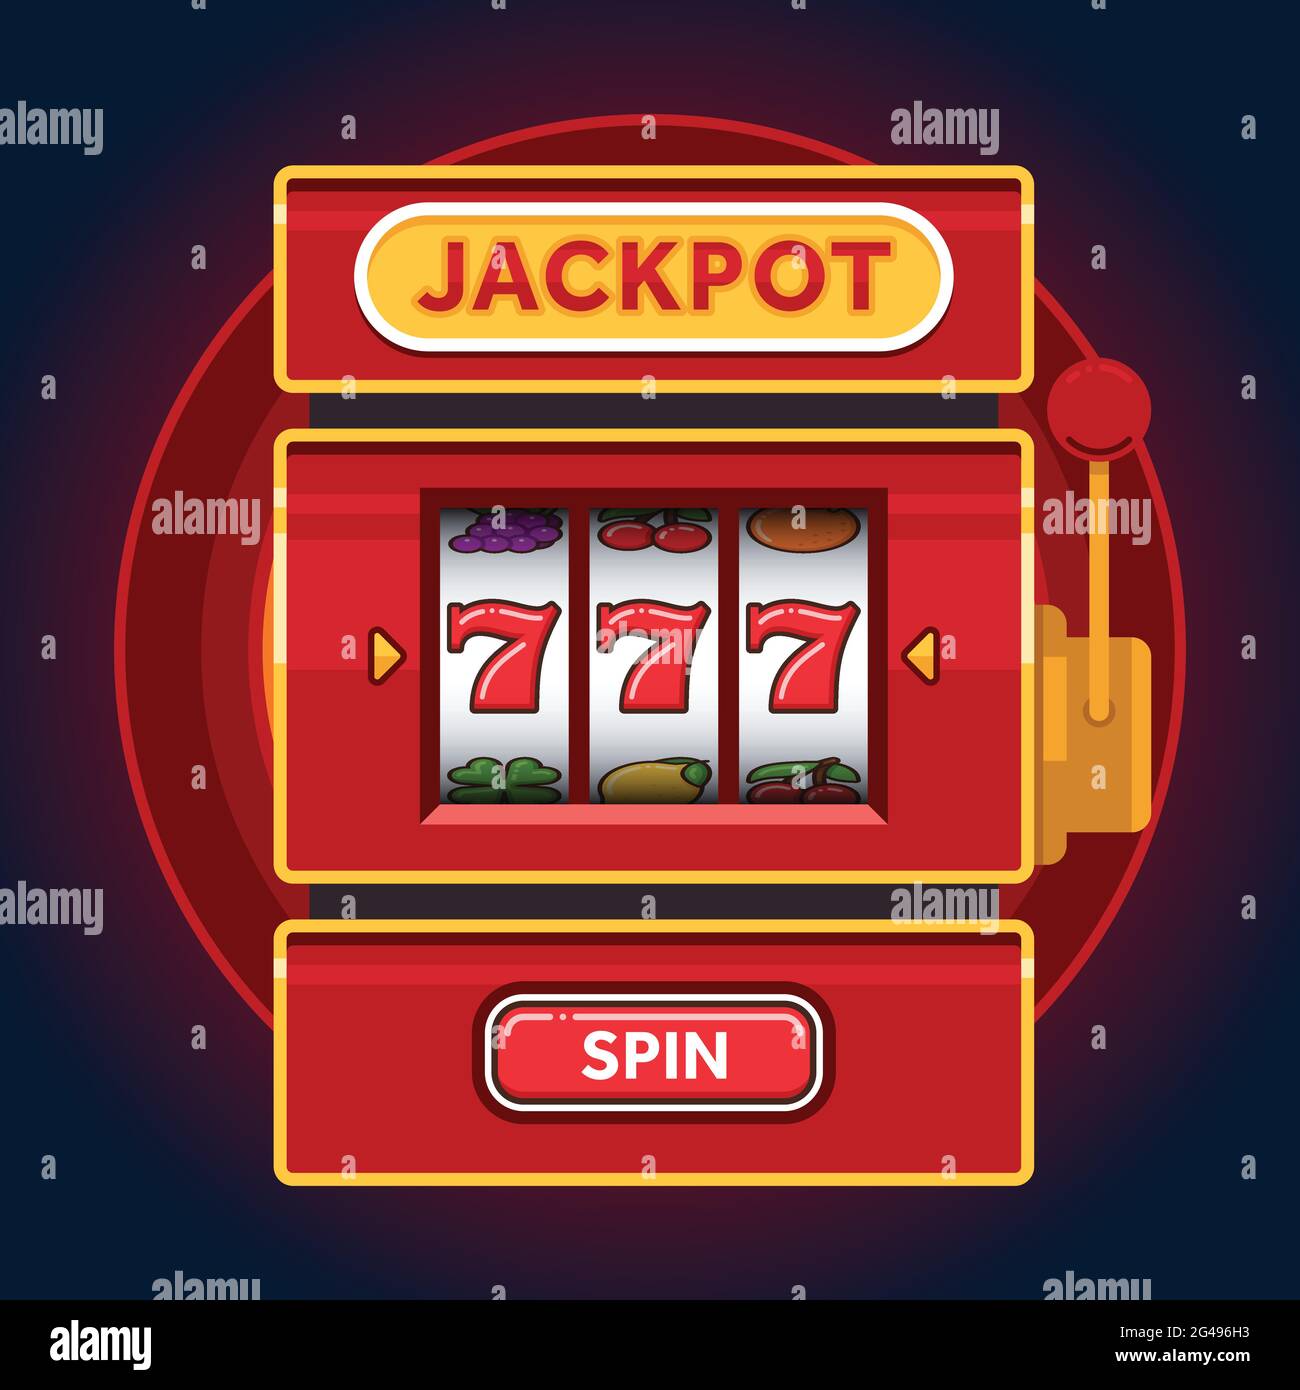 Juegos de Jackpot en Red